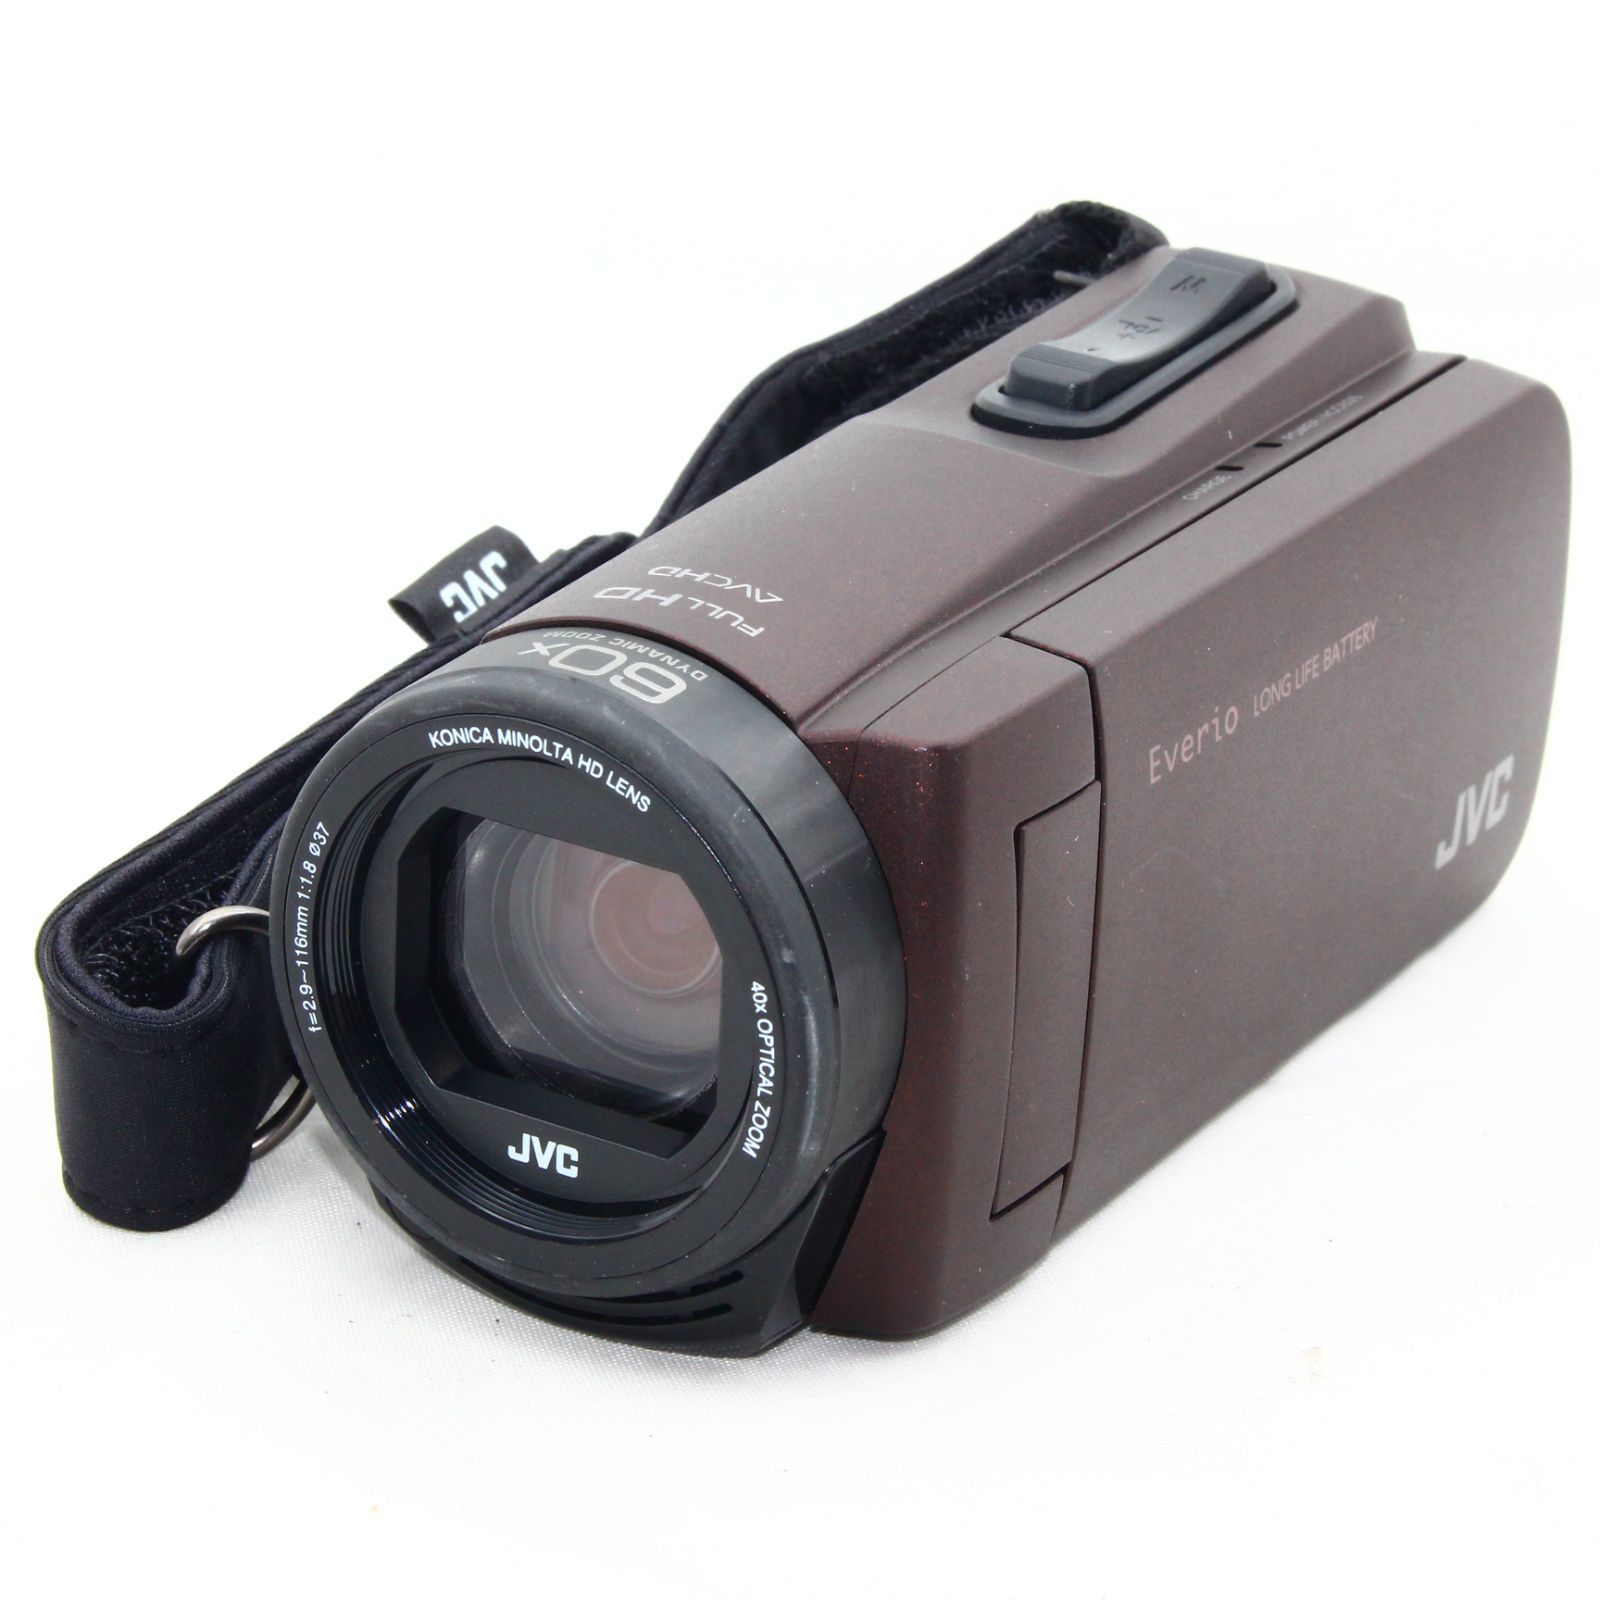 9,120円ビデオカメラ Everio ブラウン GZ-F270-T